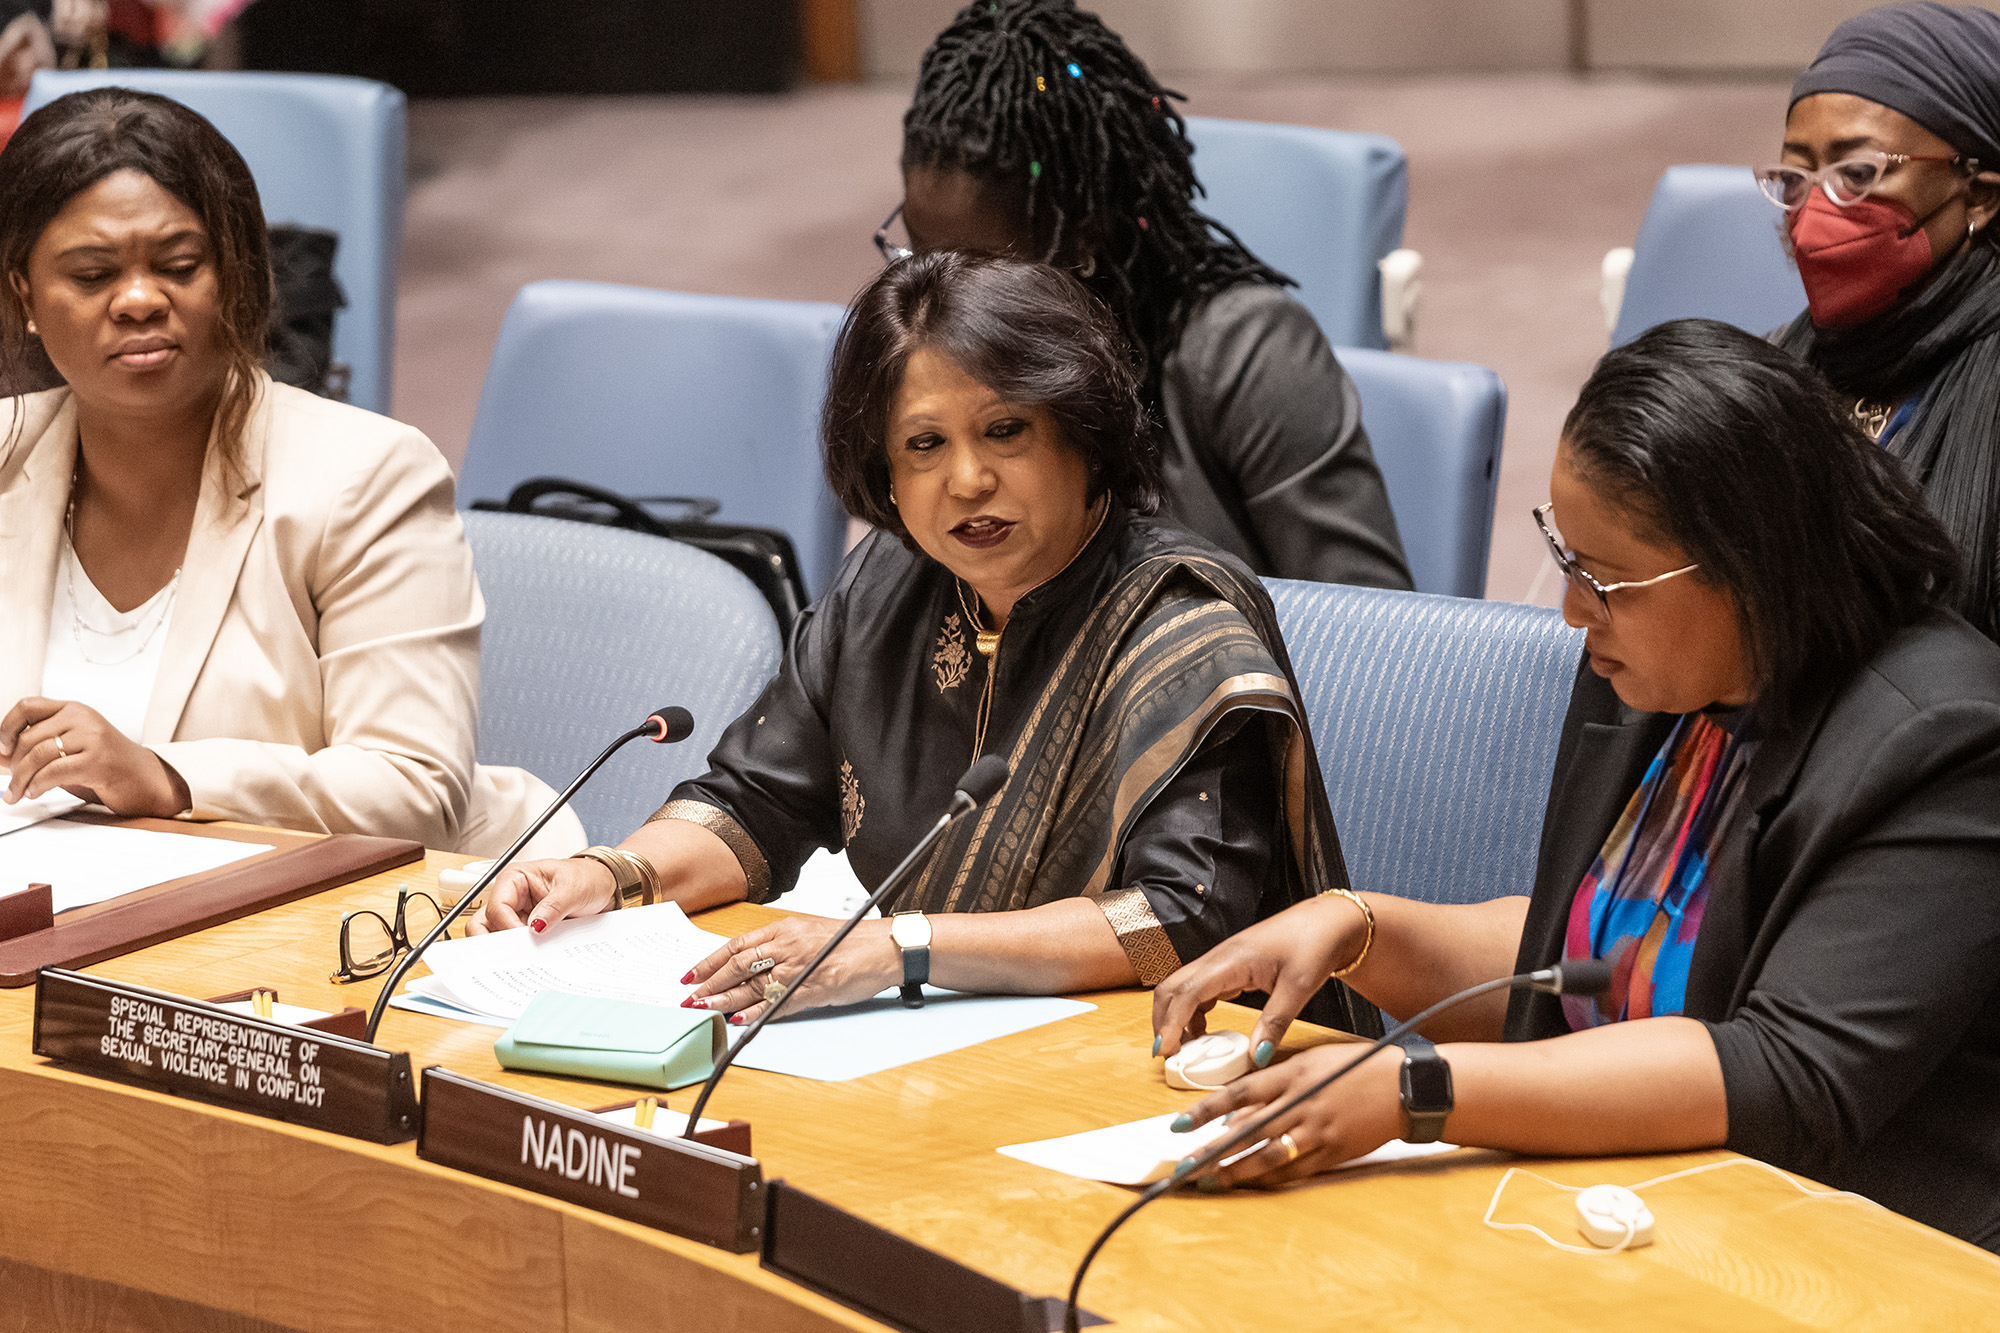 Pramila Patten, representante especial del secretario general de la ONU sobre violencia sexual en los conflictos, habla durante la reunión del Consejo de Seguridad sobre las mujeres y la paz y la seguridad en la sede de las Naciones Unidas en Nueva York el 14 de julio. (Crédito: Lev Radin/Pacific Press/LightRocket/Getty Images)